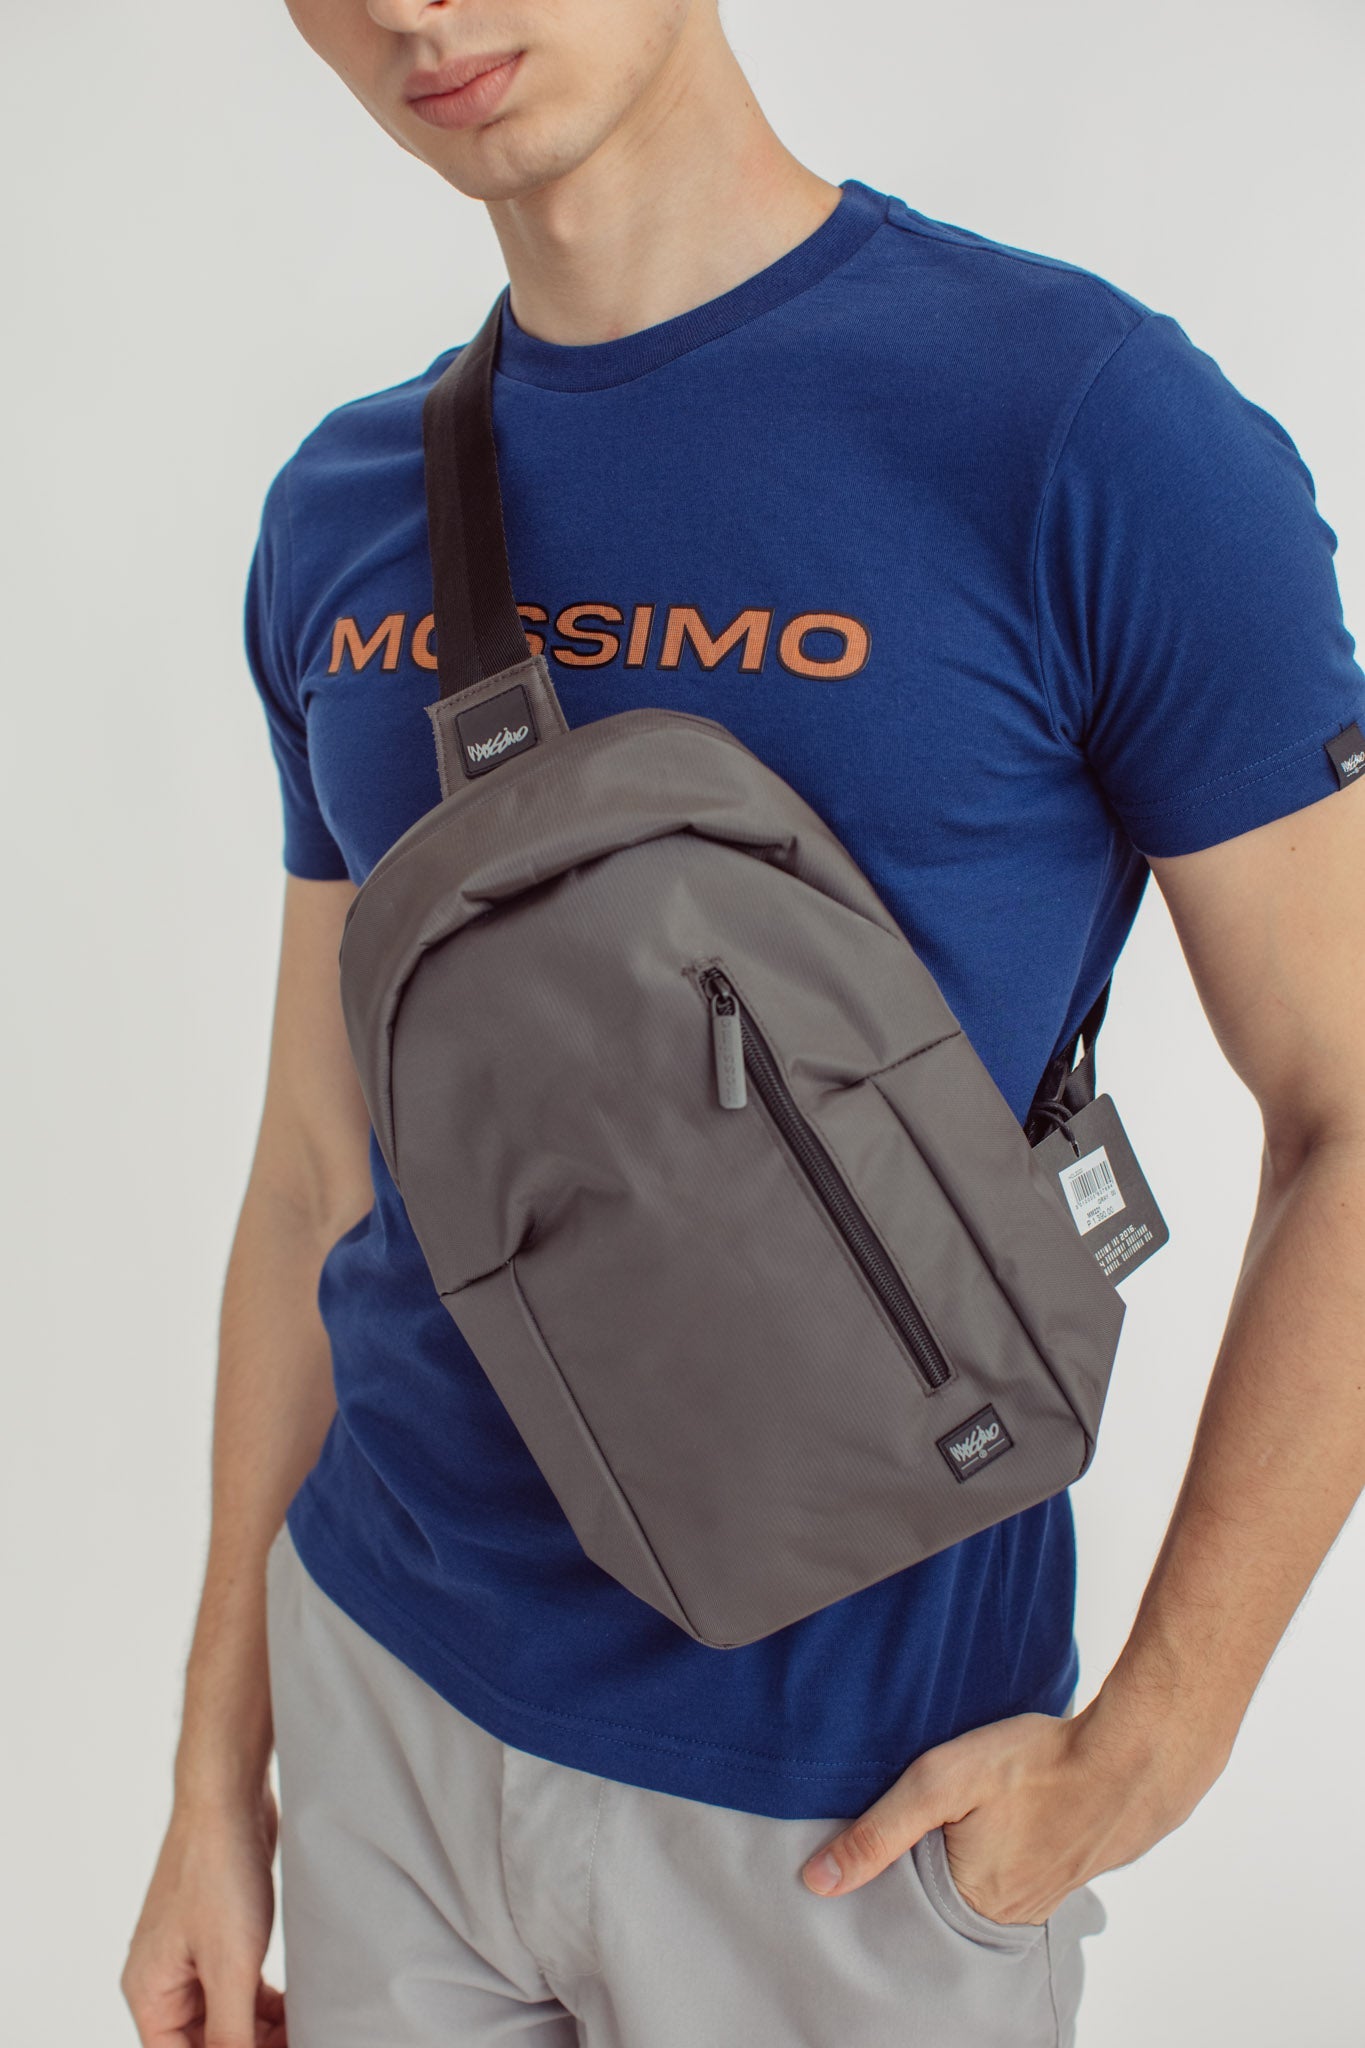 Jeric Mossimo Men's Body Bag - Mossimo PH